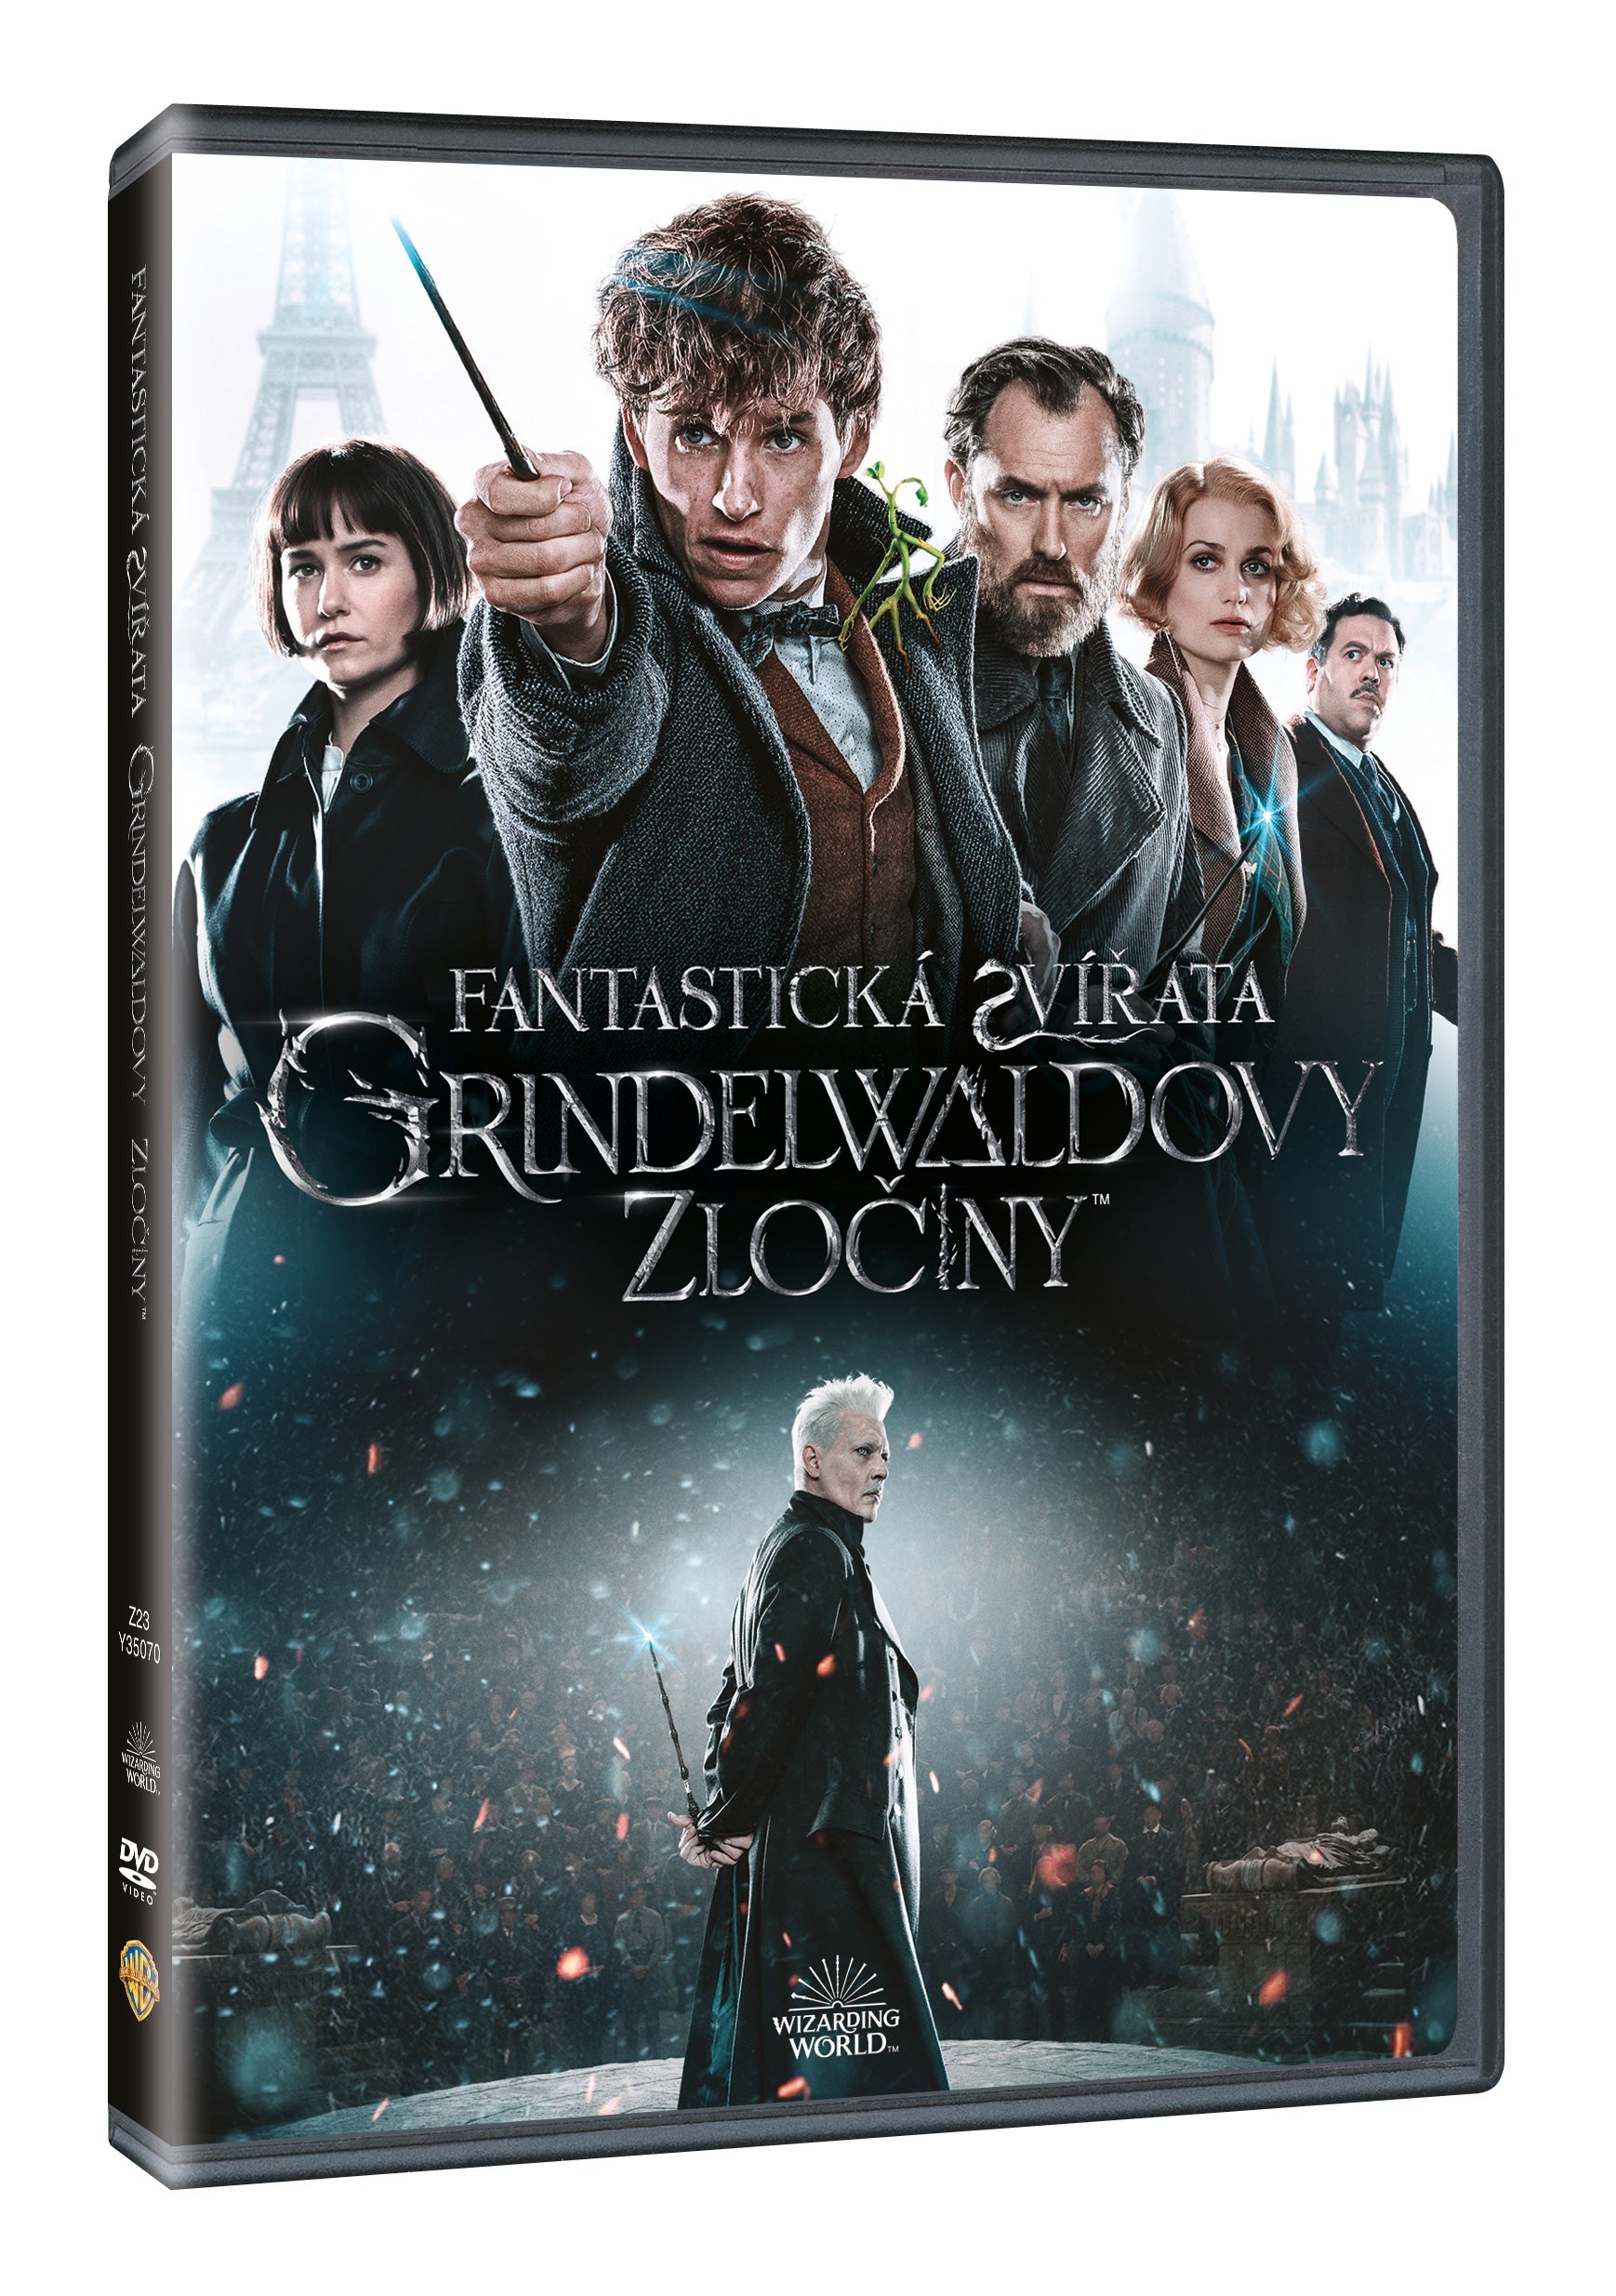 Fantasticka zvirata: Grindelwaldovy zlociny DVD / Fantastic Beasts: The Crimes of Grindelwald